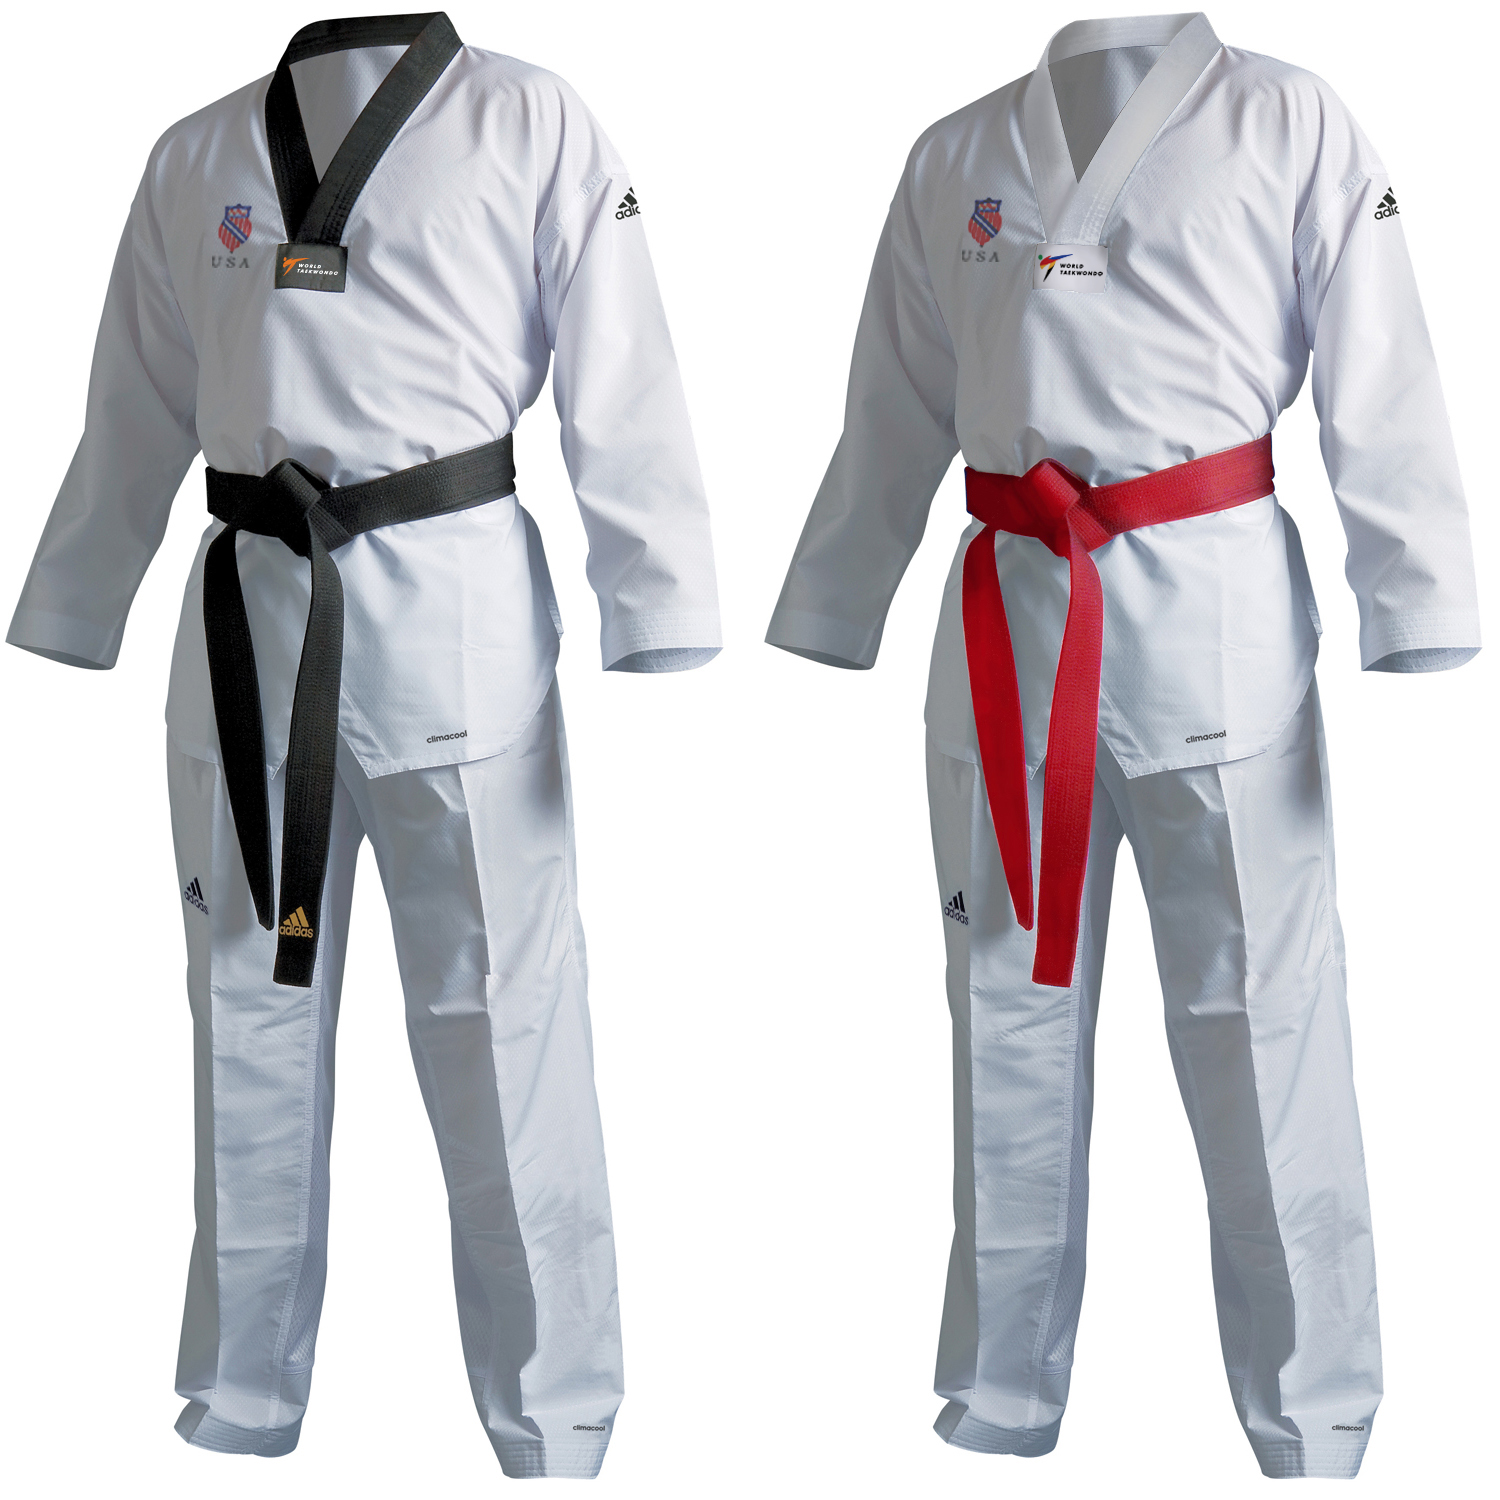 AAU Taekwondo adidas Eco Fighter Uniform